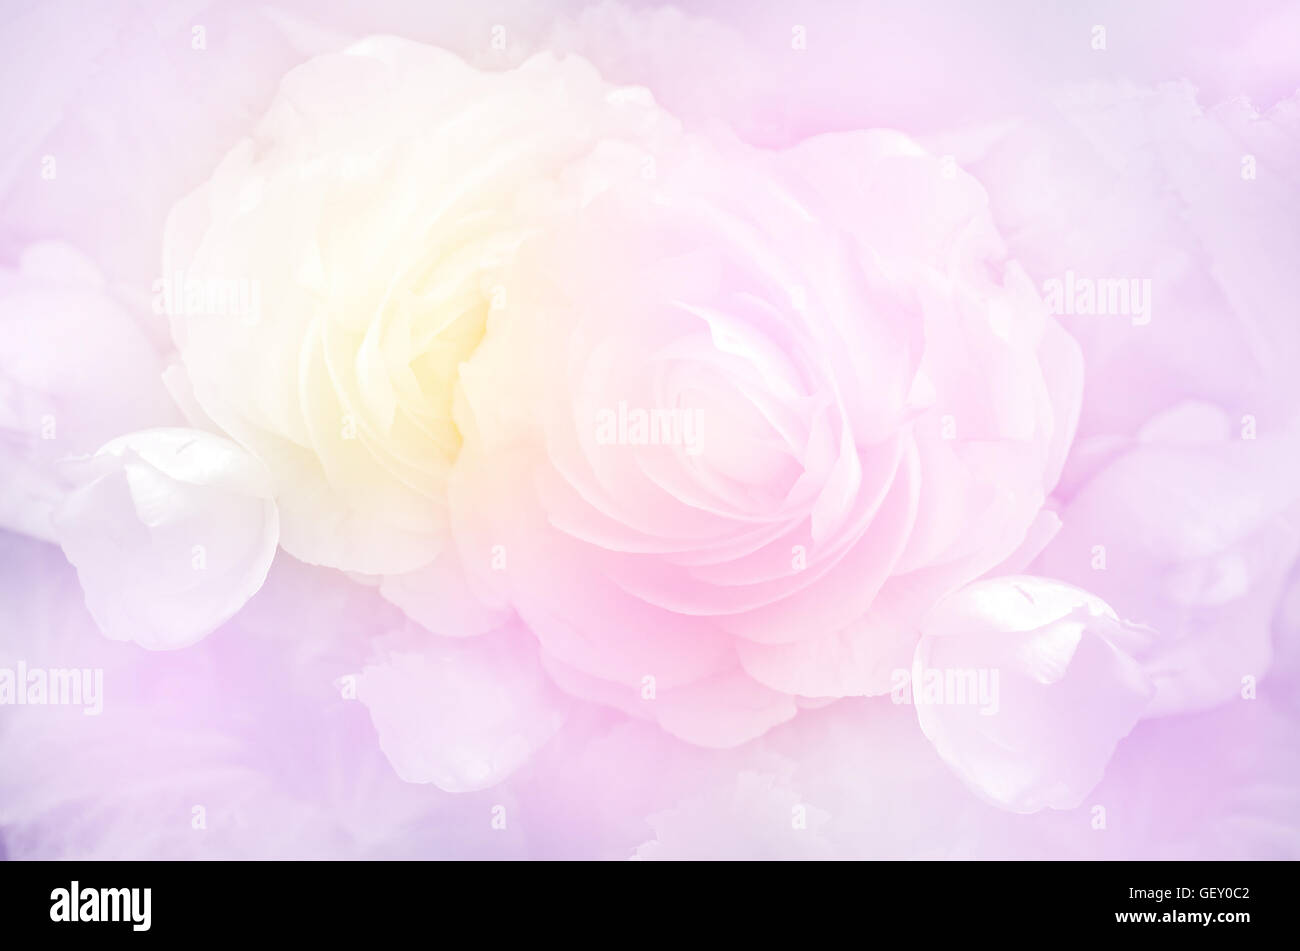 Rosen in weichen Pastellfarben Ton. Stockfoto